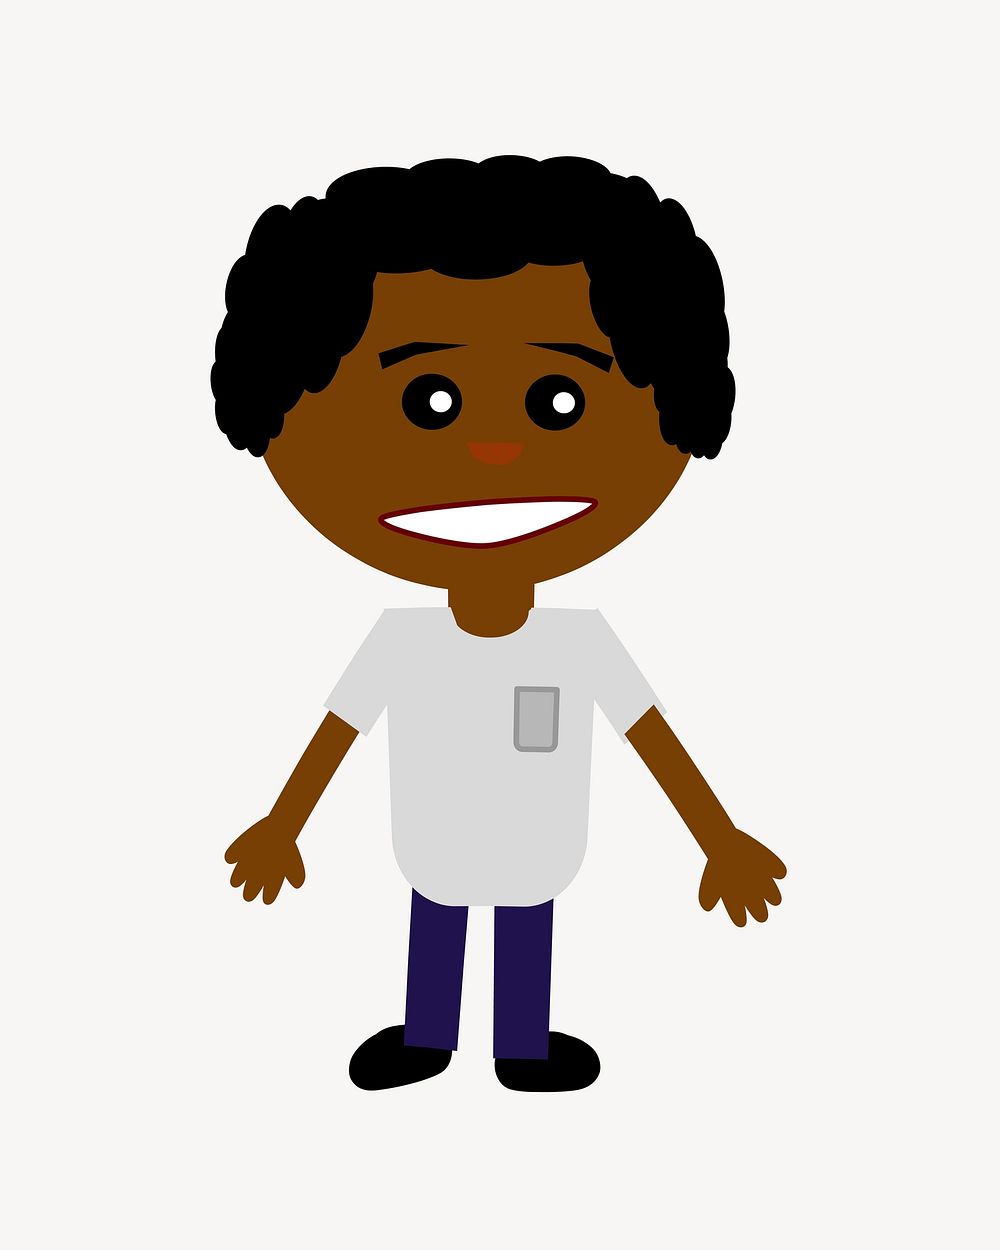 Black boy clip art. Free public domain CC0 image.